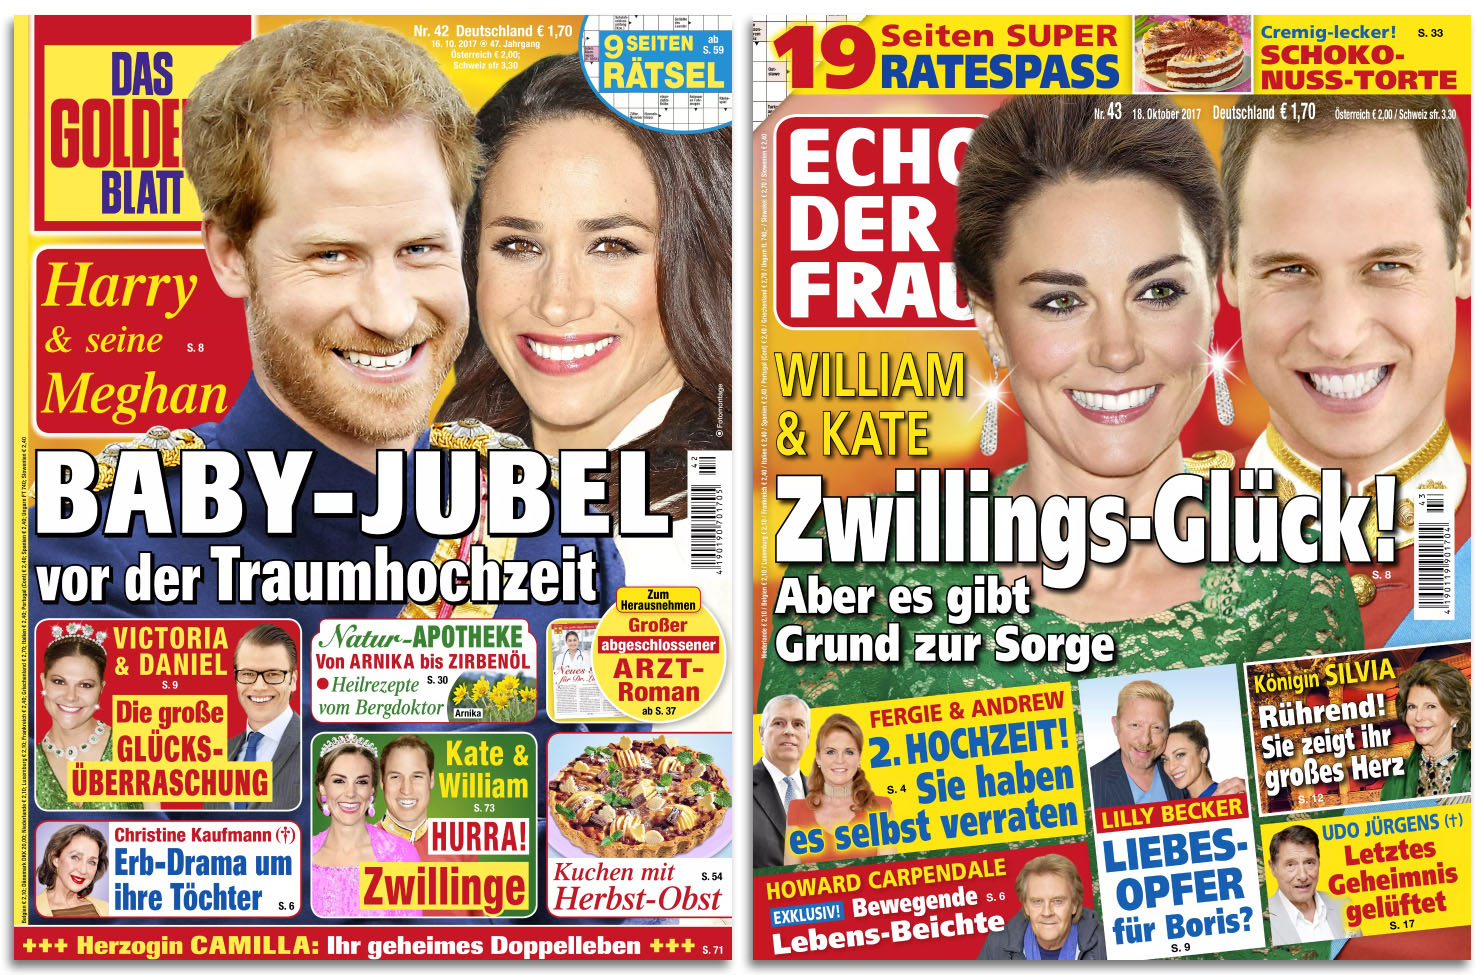 Links: "Das goldene Blatt", Titelschlagzeile: "Harry & seine Megan - BABY-JUBEL vor der Traumhochzeit" | Rechts: "Echo der Frau", Titelschlagzeile: "William & Kate - Zwillings-Glück - Aber es gibt Grund zur Sorge"